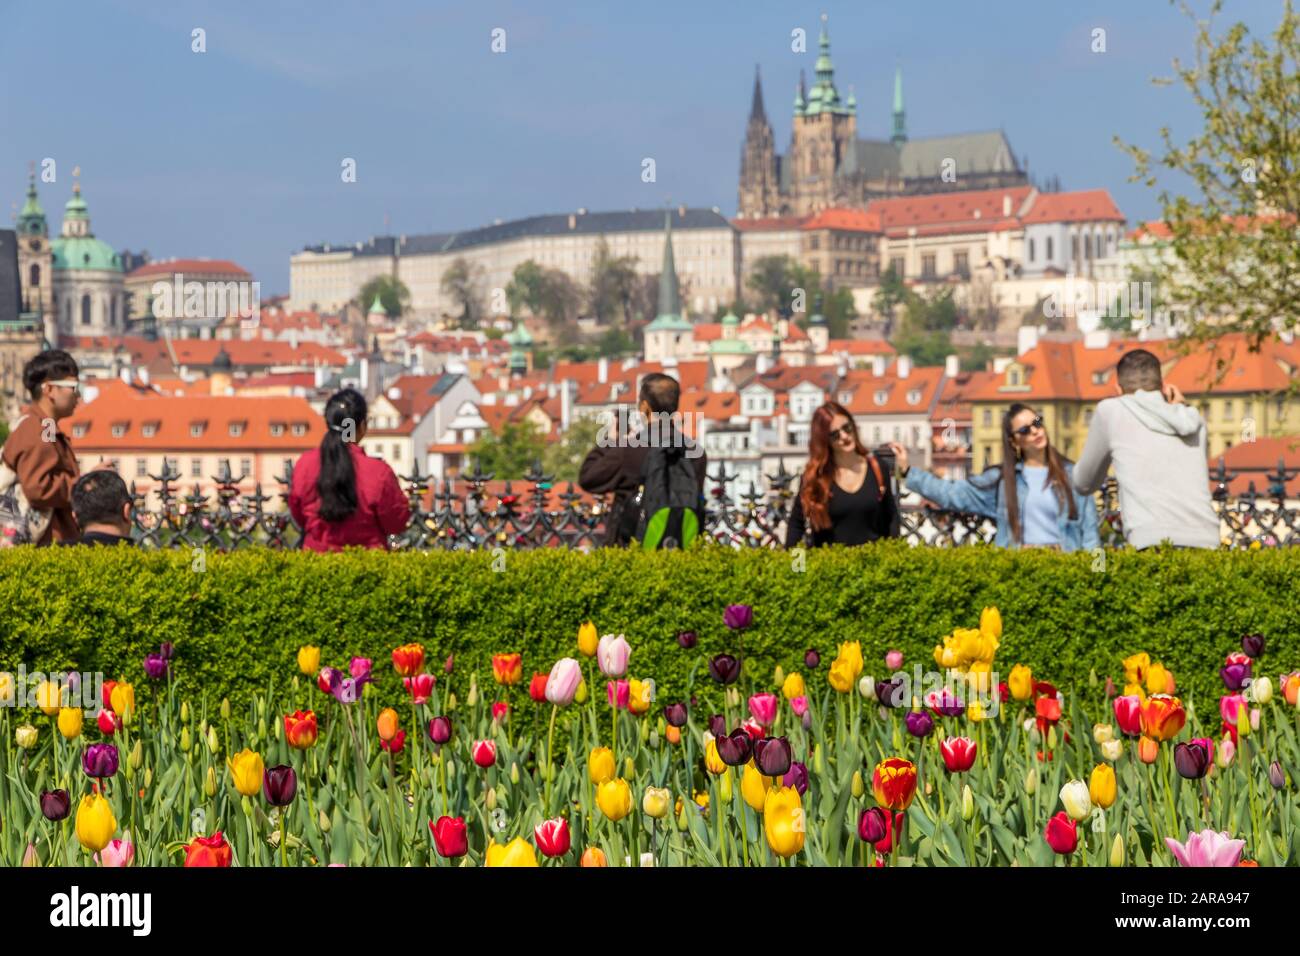 Vue de la vieille ville au château de Prague et au quartier de Mala Strana (petite ville), Prague, Bohême, République tchèque, Europe Banque D'Images